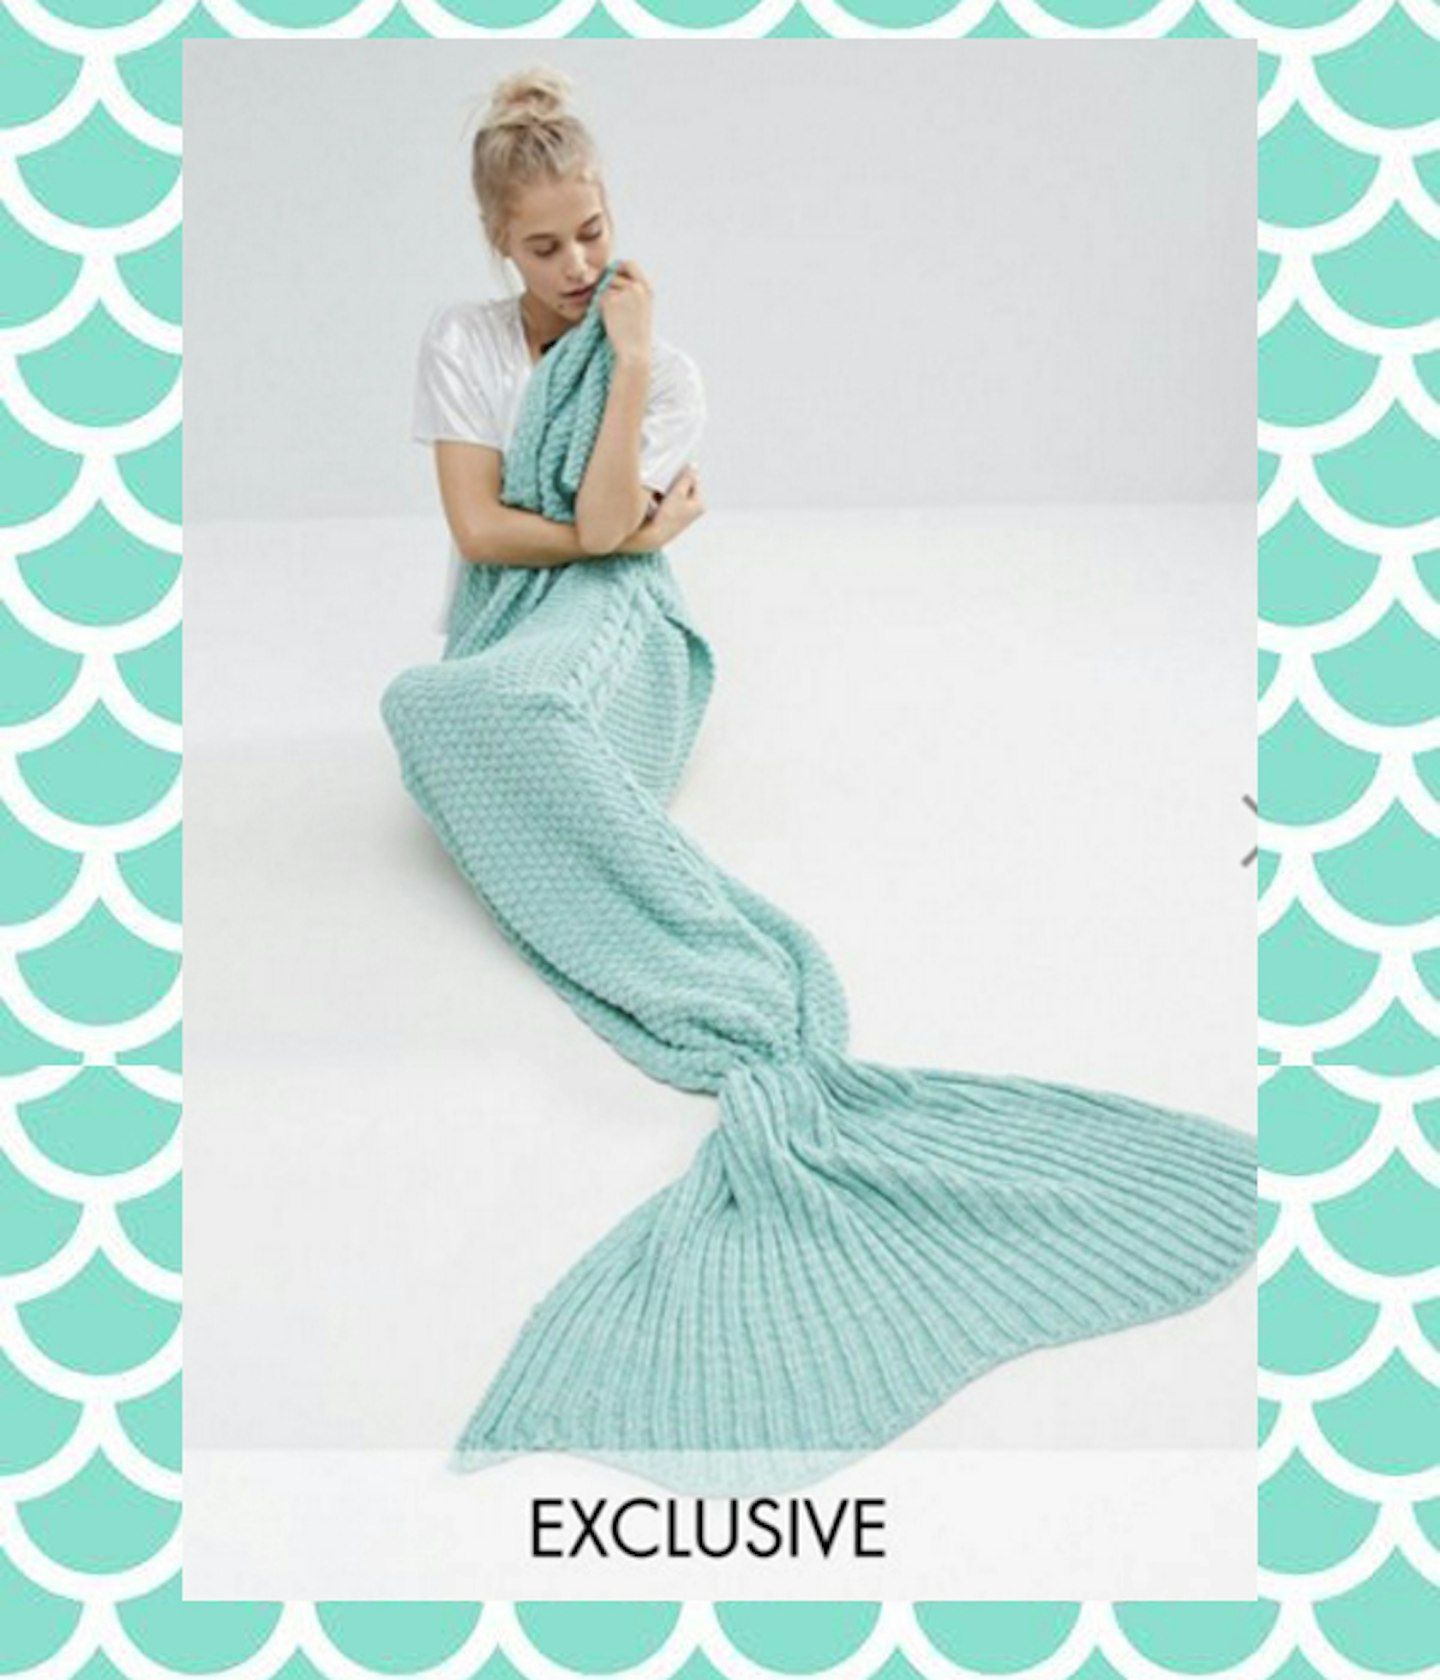 Mermaid fashion